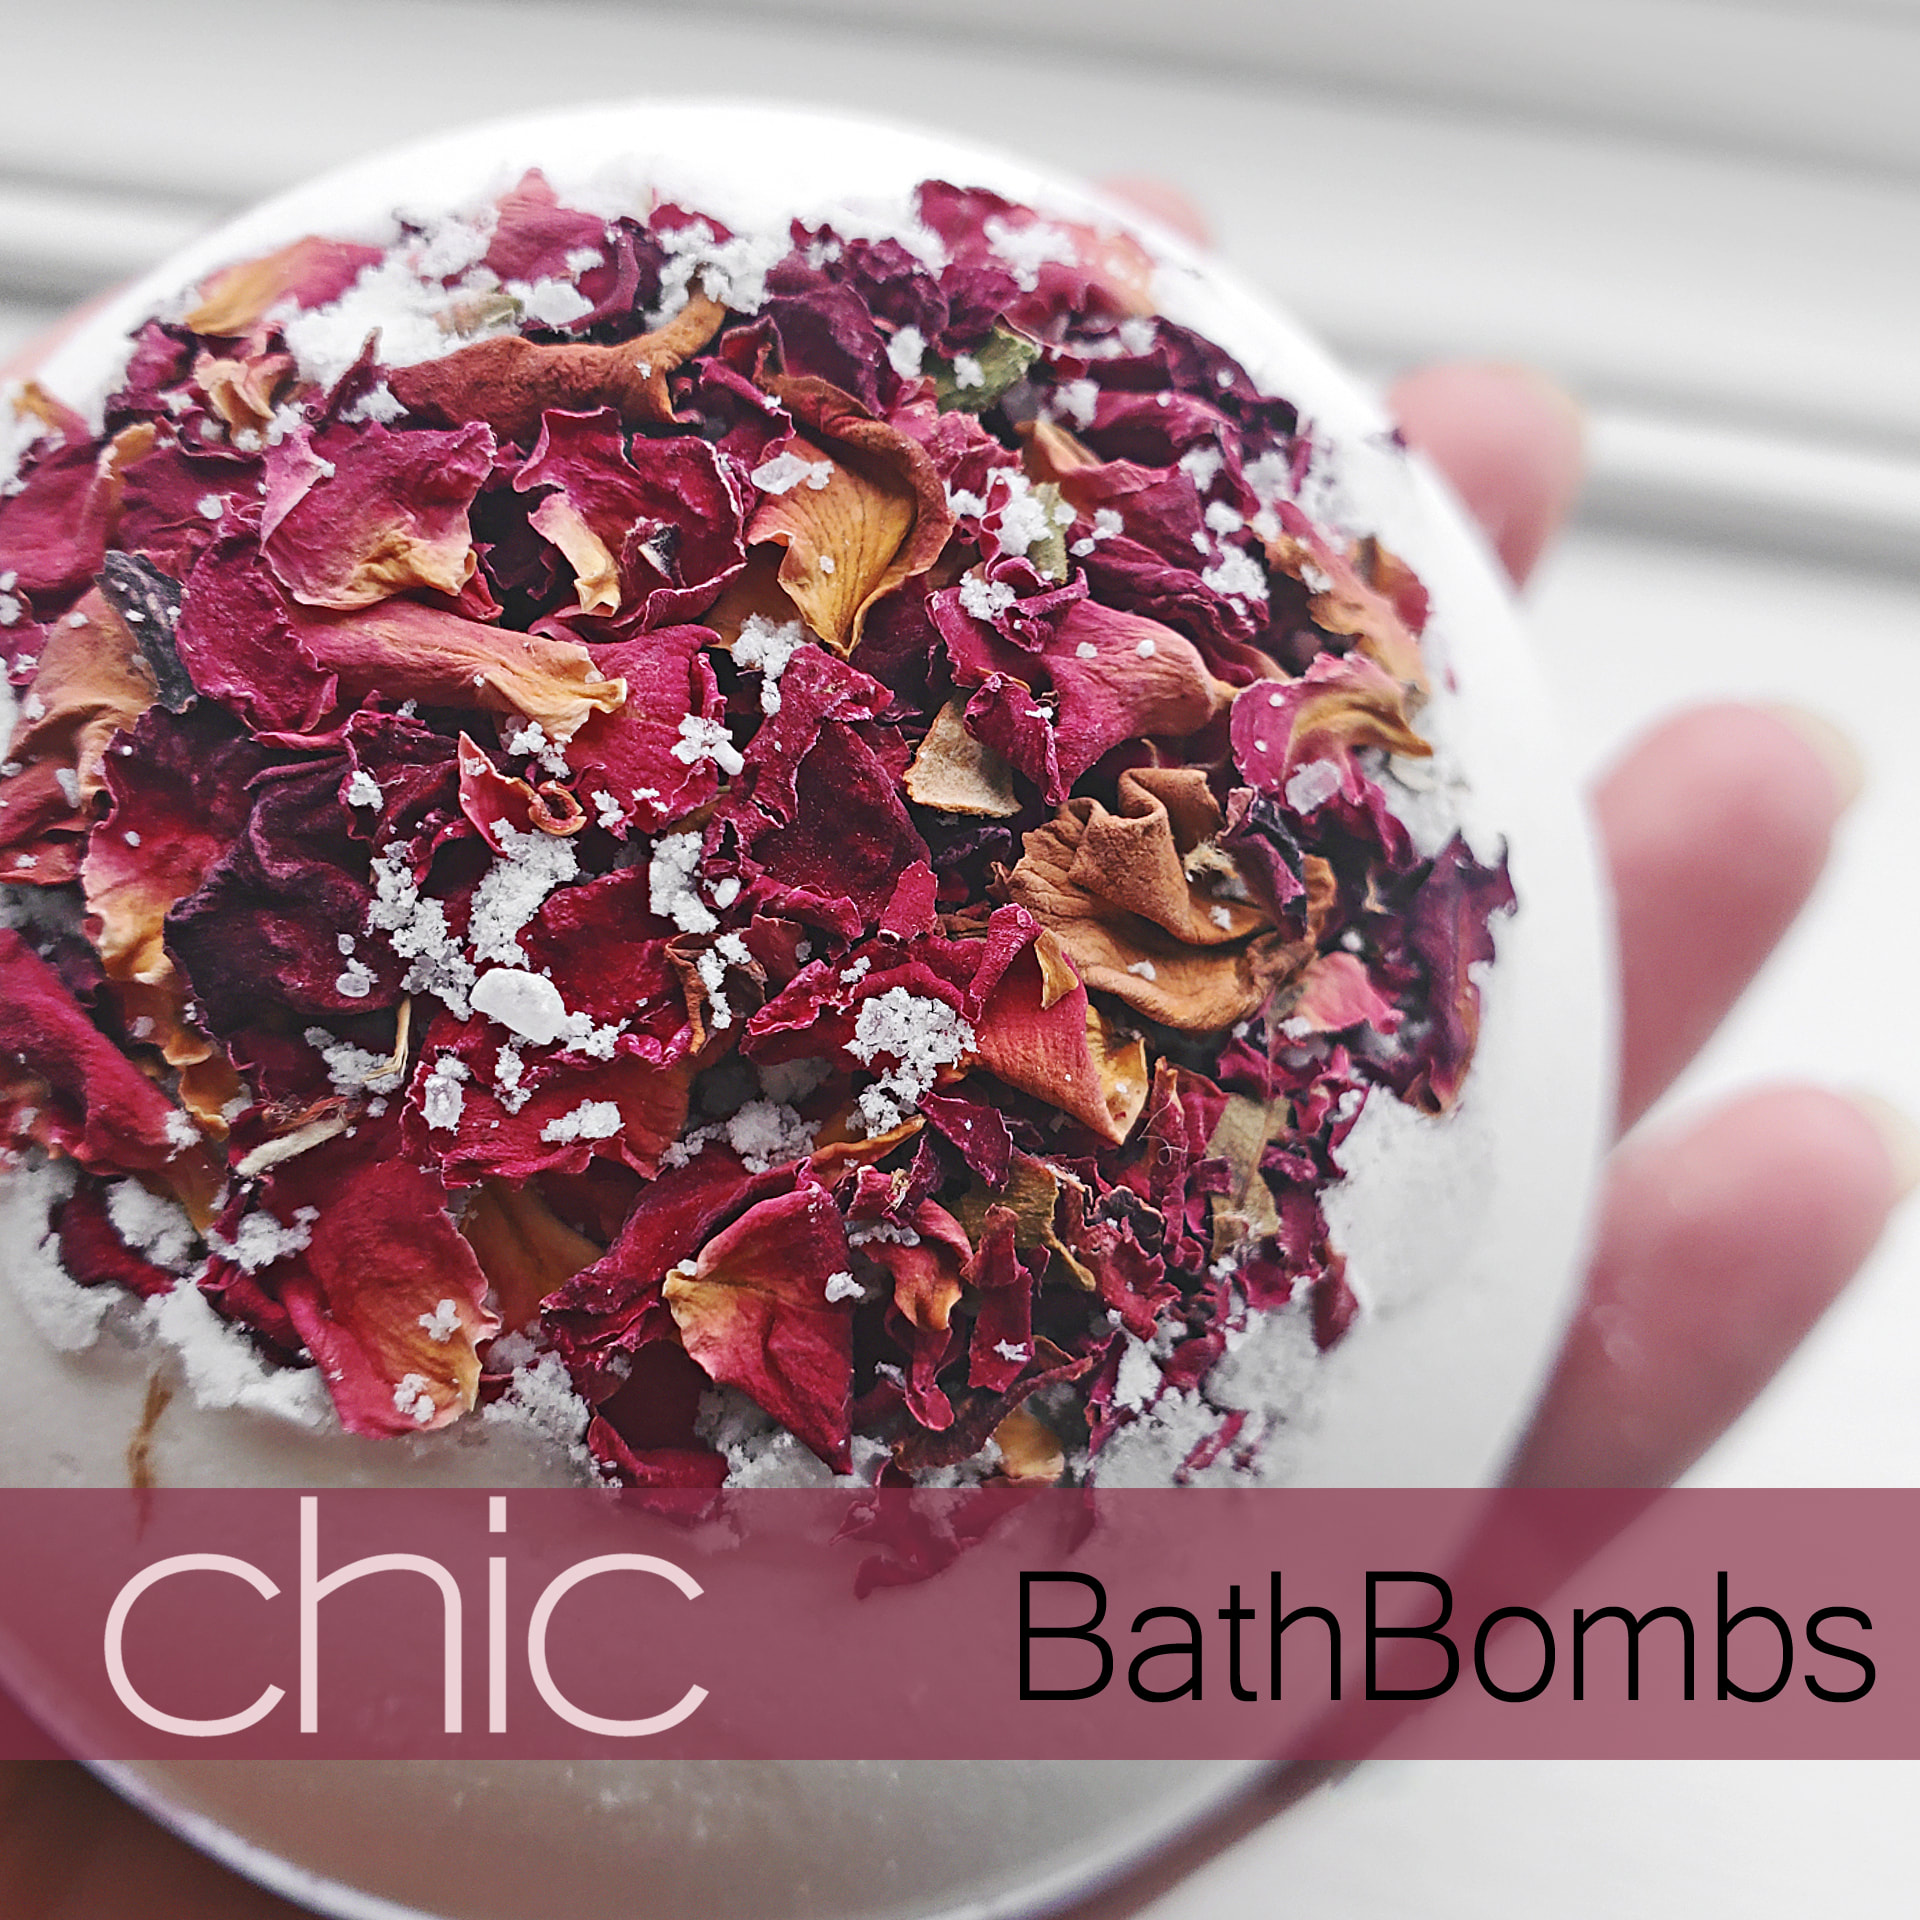 Rose Petal Bath Bomb 